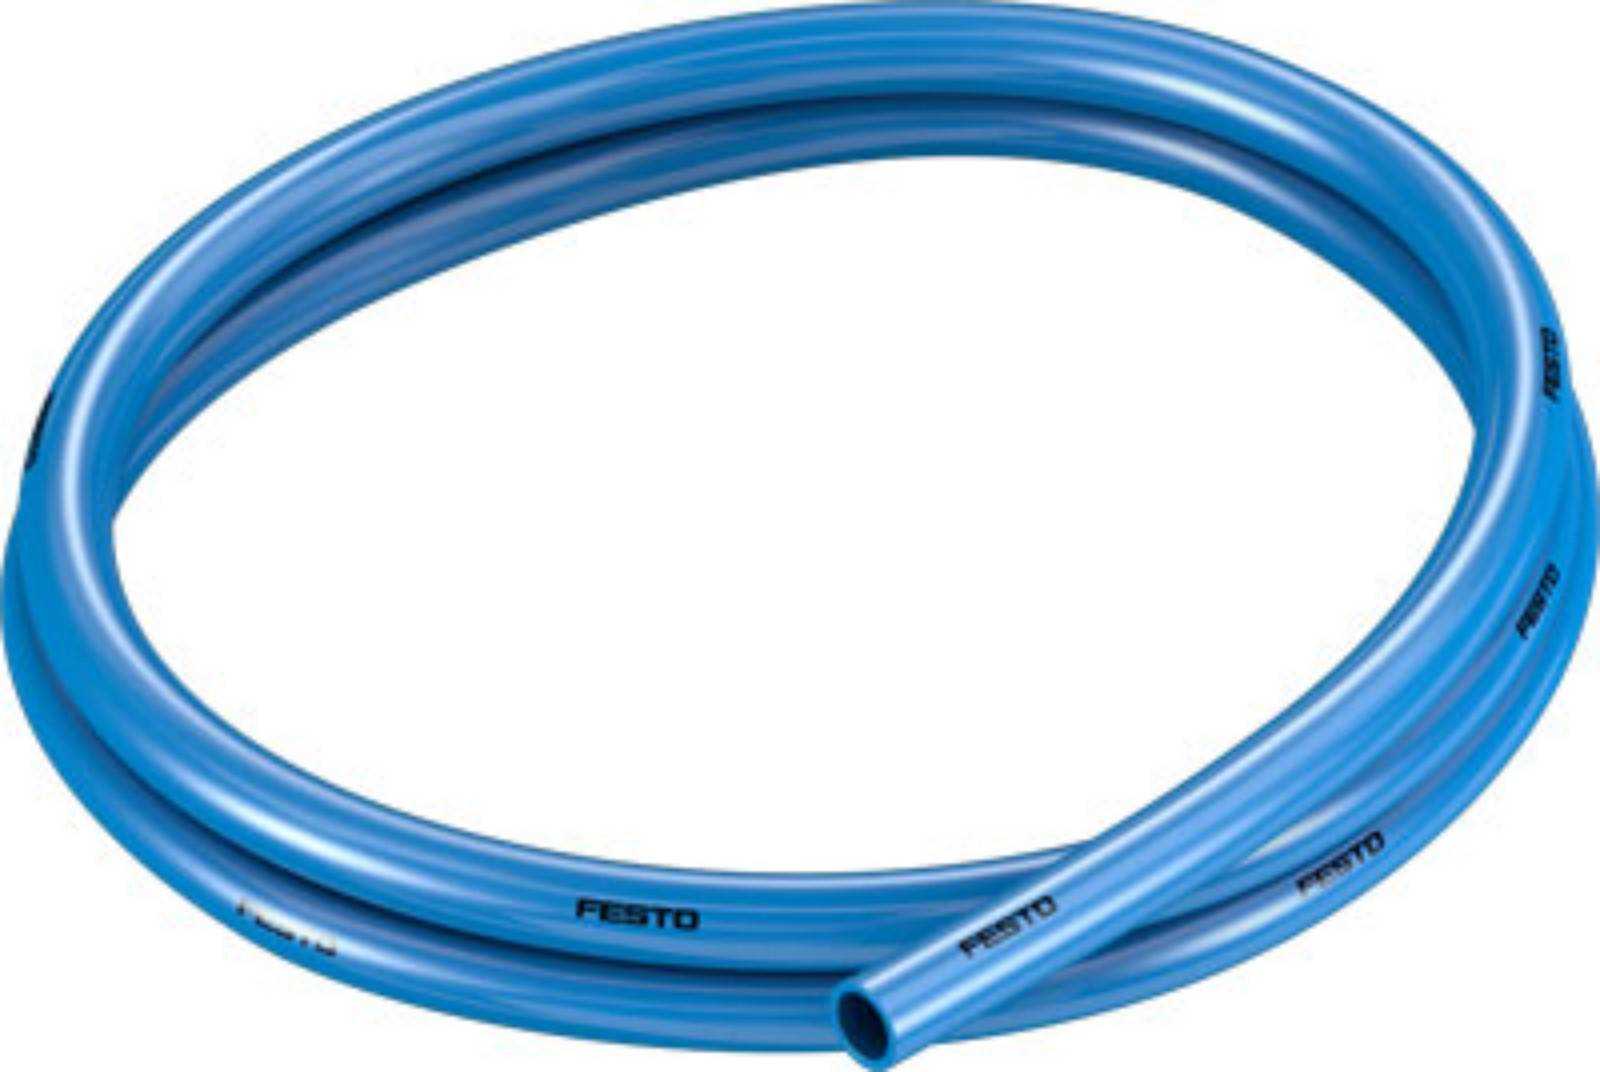 PUN BLUE PUN SERIES PLASTIC TUBE-... X... -BL 159662, 159664, 159666, 159668, 159670, 159672 BOX 50 MT. FESTO